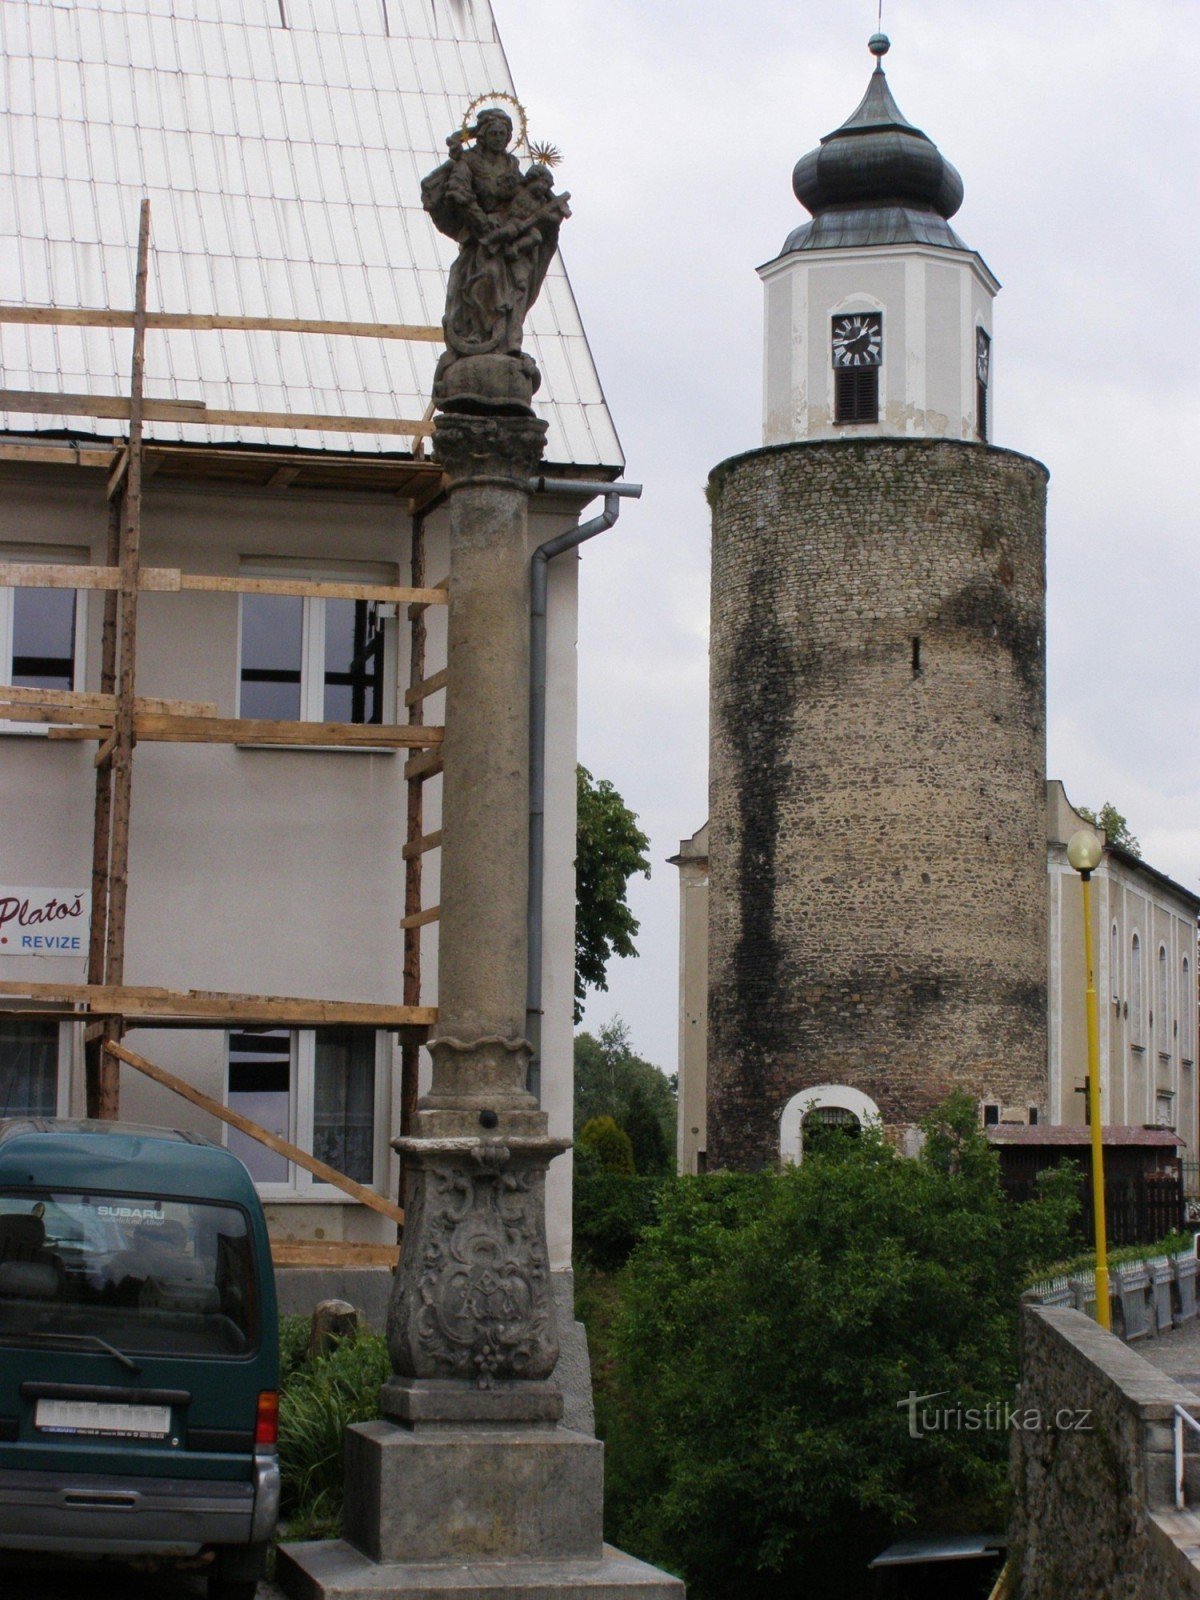 Žulová - en søjle med en statue af Vor Frue